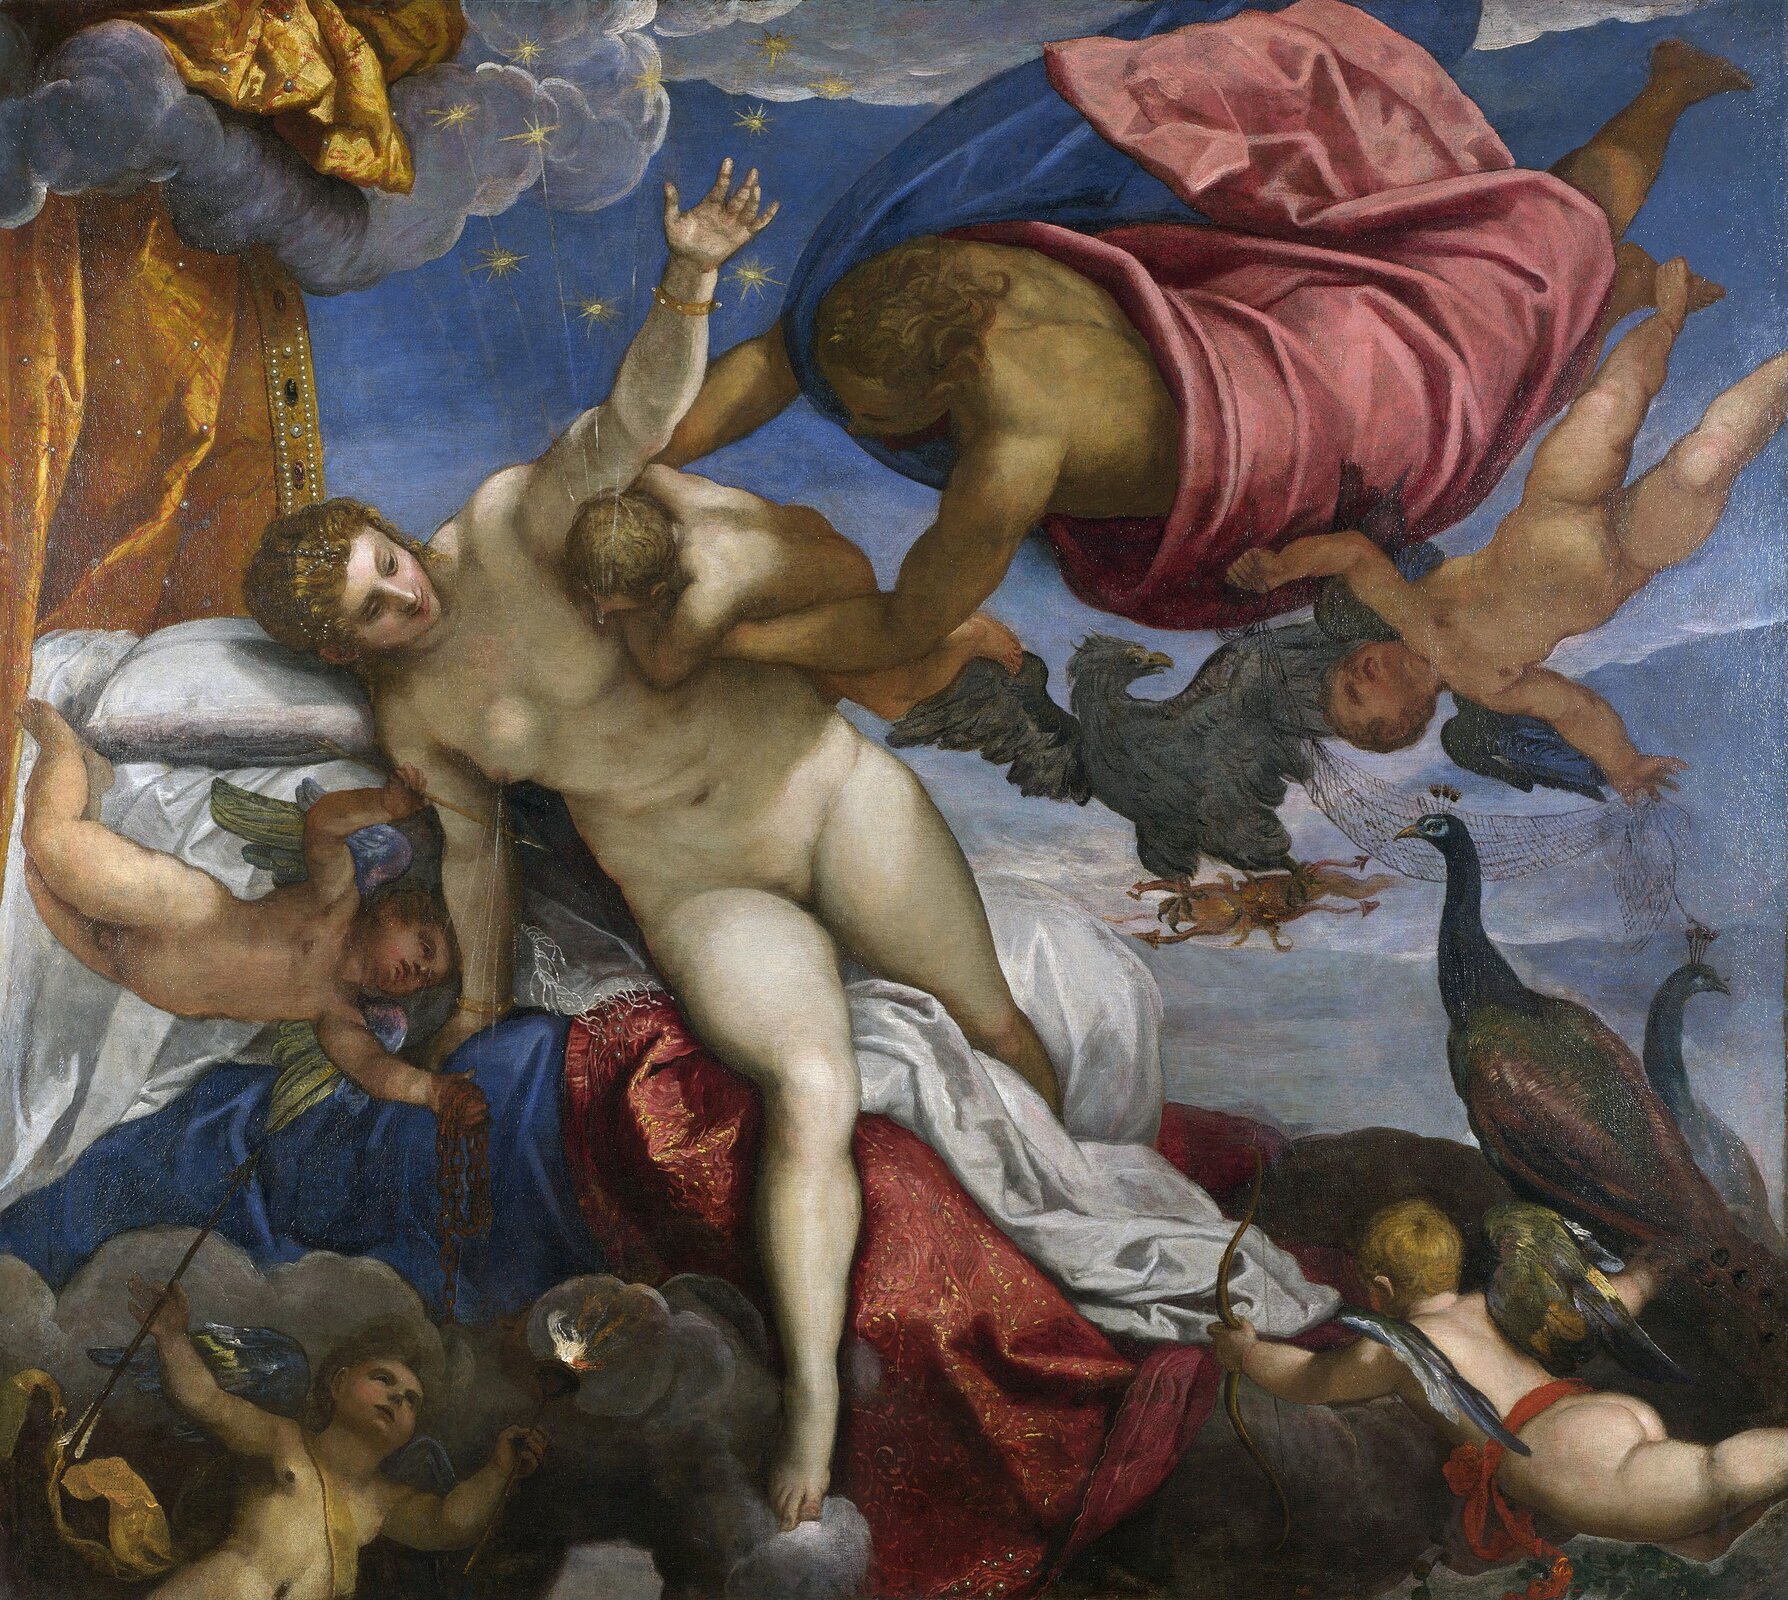 Obraz autorstwa Jacopo Tintoretto pod tytułem „Pochodzenie Drogi Mlecznej” przedstawia grupę osób przebywających na chmurze. W centrum obrazu znajduje się naga kobieta rudowłosa kobieta – Hera, która odrywa od swojej piersi małego Heraklesa. Mleko z jej piersi trysnęło na niebie tworząc drogę mleczną. Obok niej widoczny jest Zeus z Heraklesem na rękach. Zeus został przedstawiony jako młody mężczyzna o średniej długości włosach. Ubrany jest w niebiesko-czerwone szaty. Wokół Zeusa i Hery widoczne są małe skrzydlate amorki. 